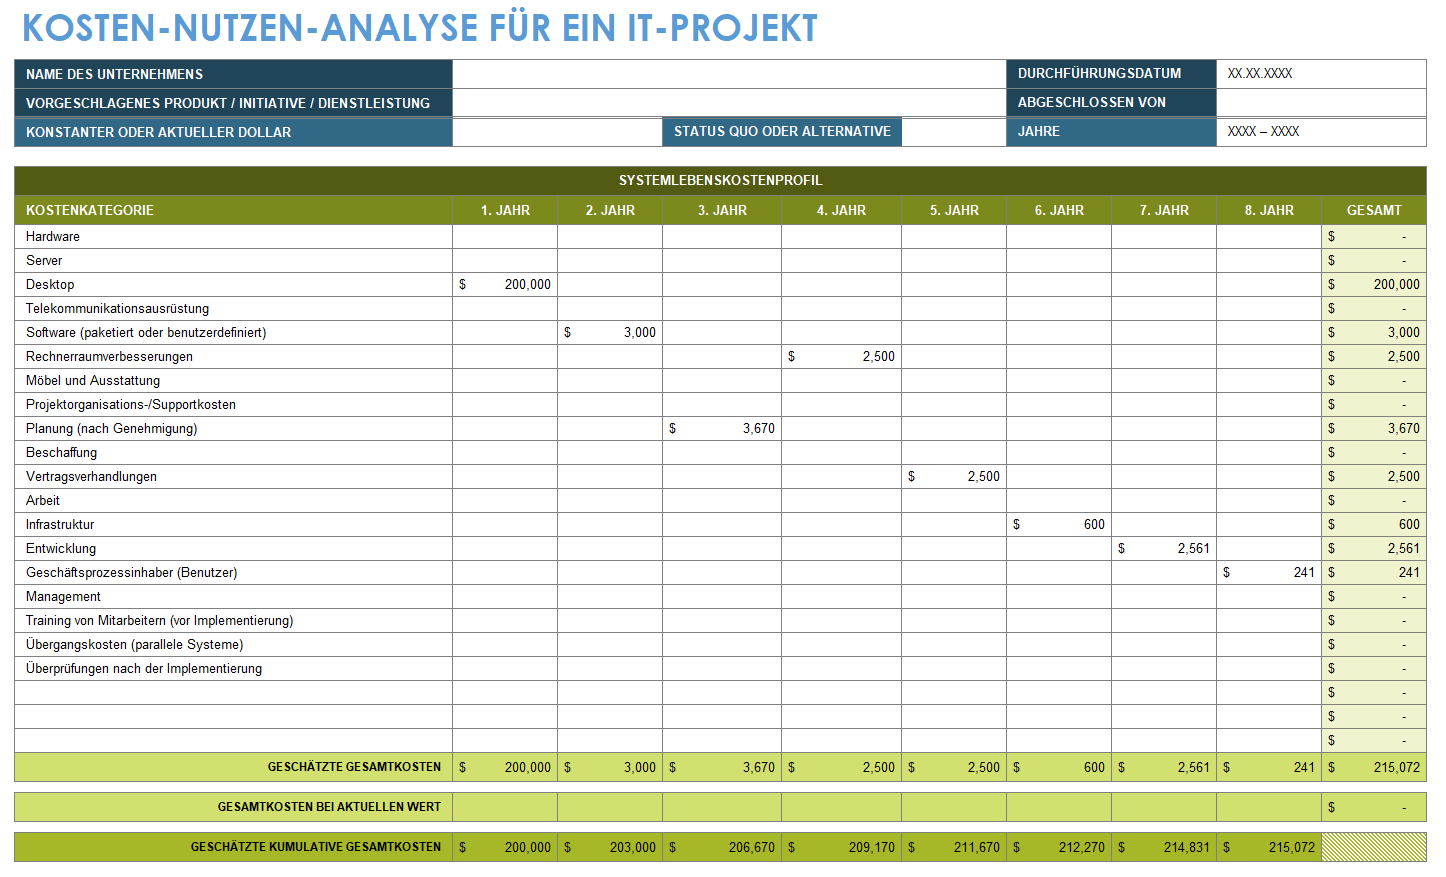 Vorlage für die Kosten-Nutzen-Analyse von IT-Projekten